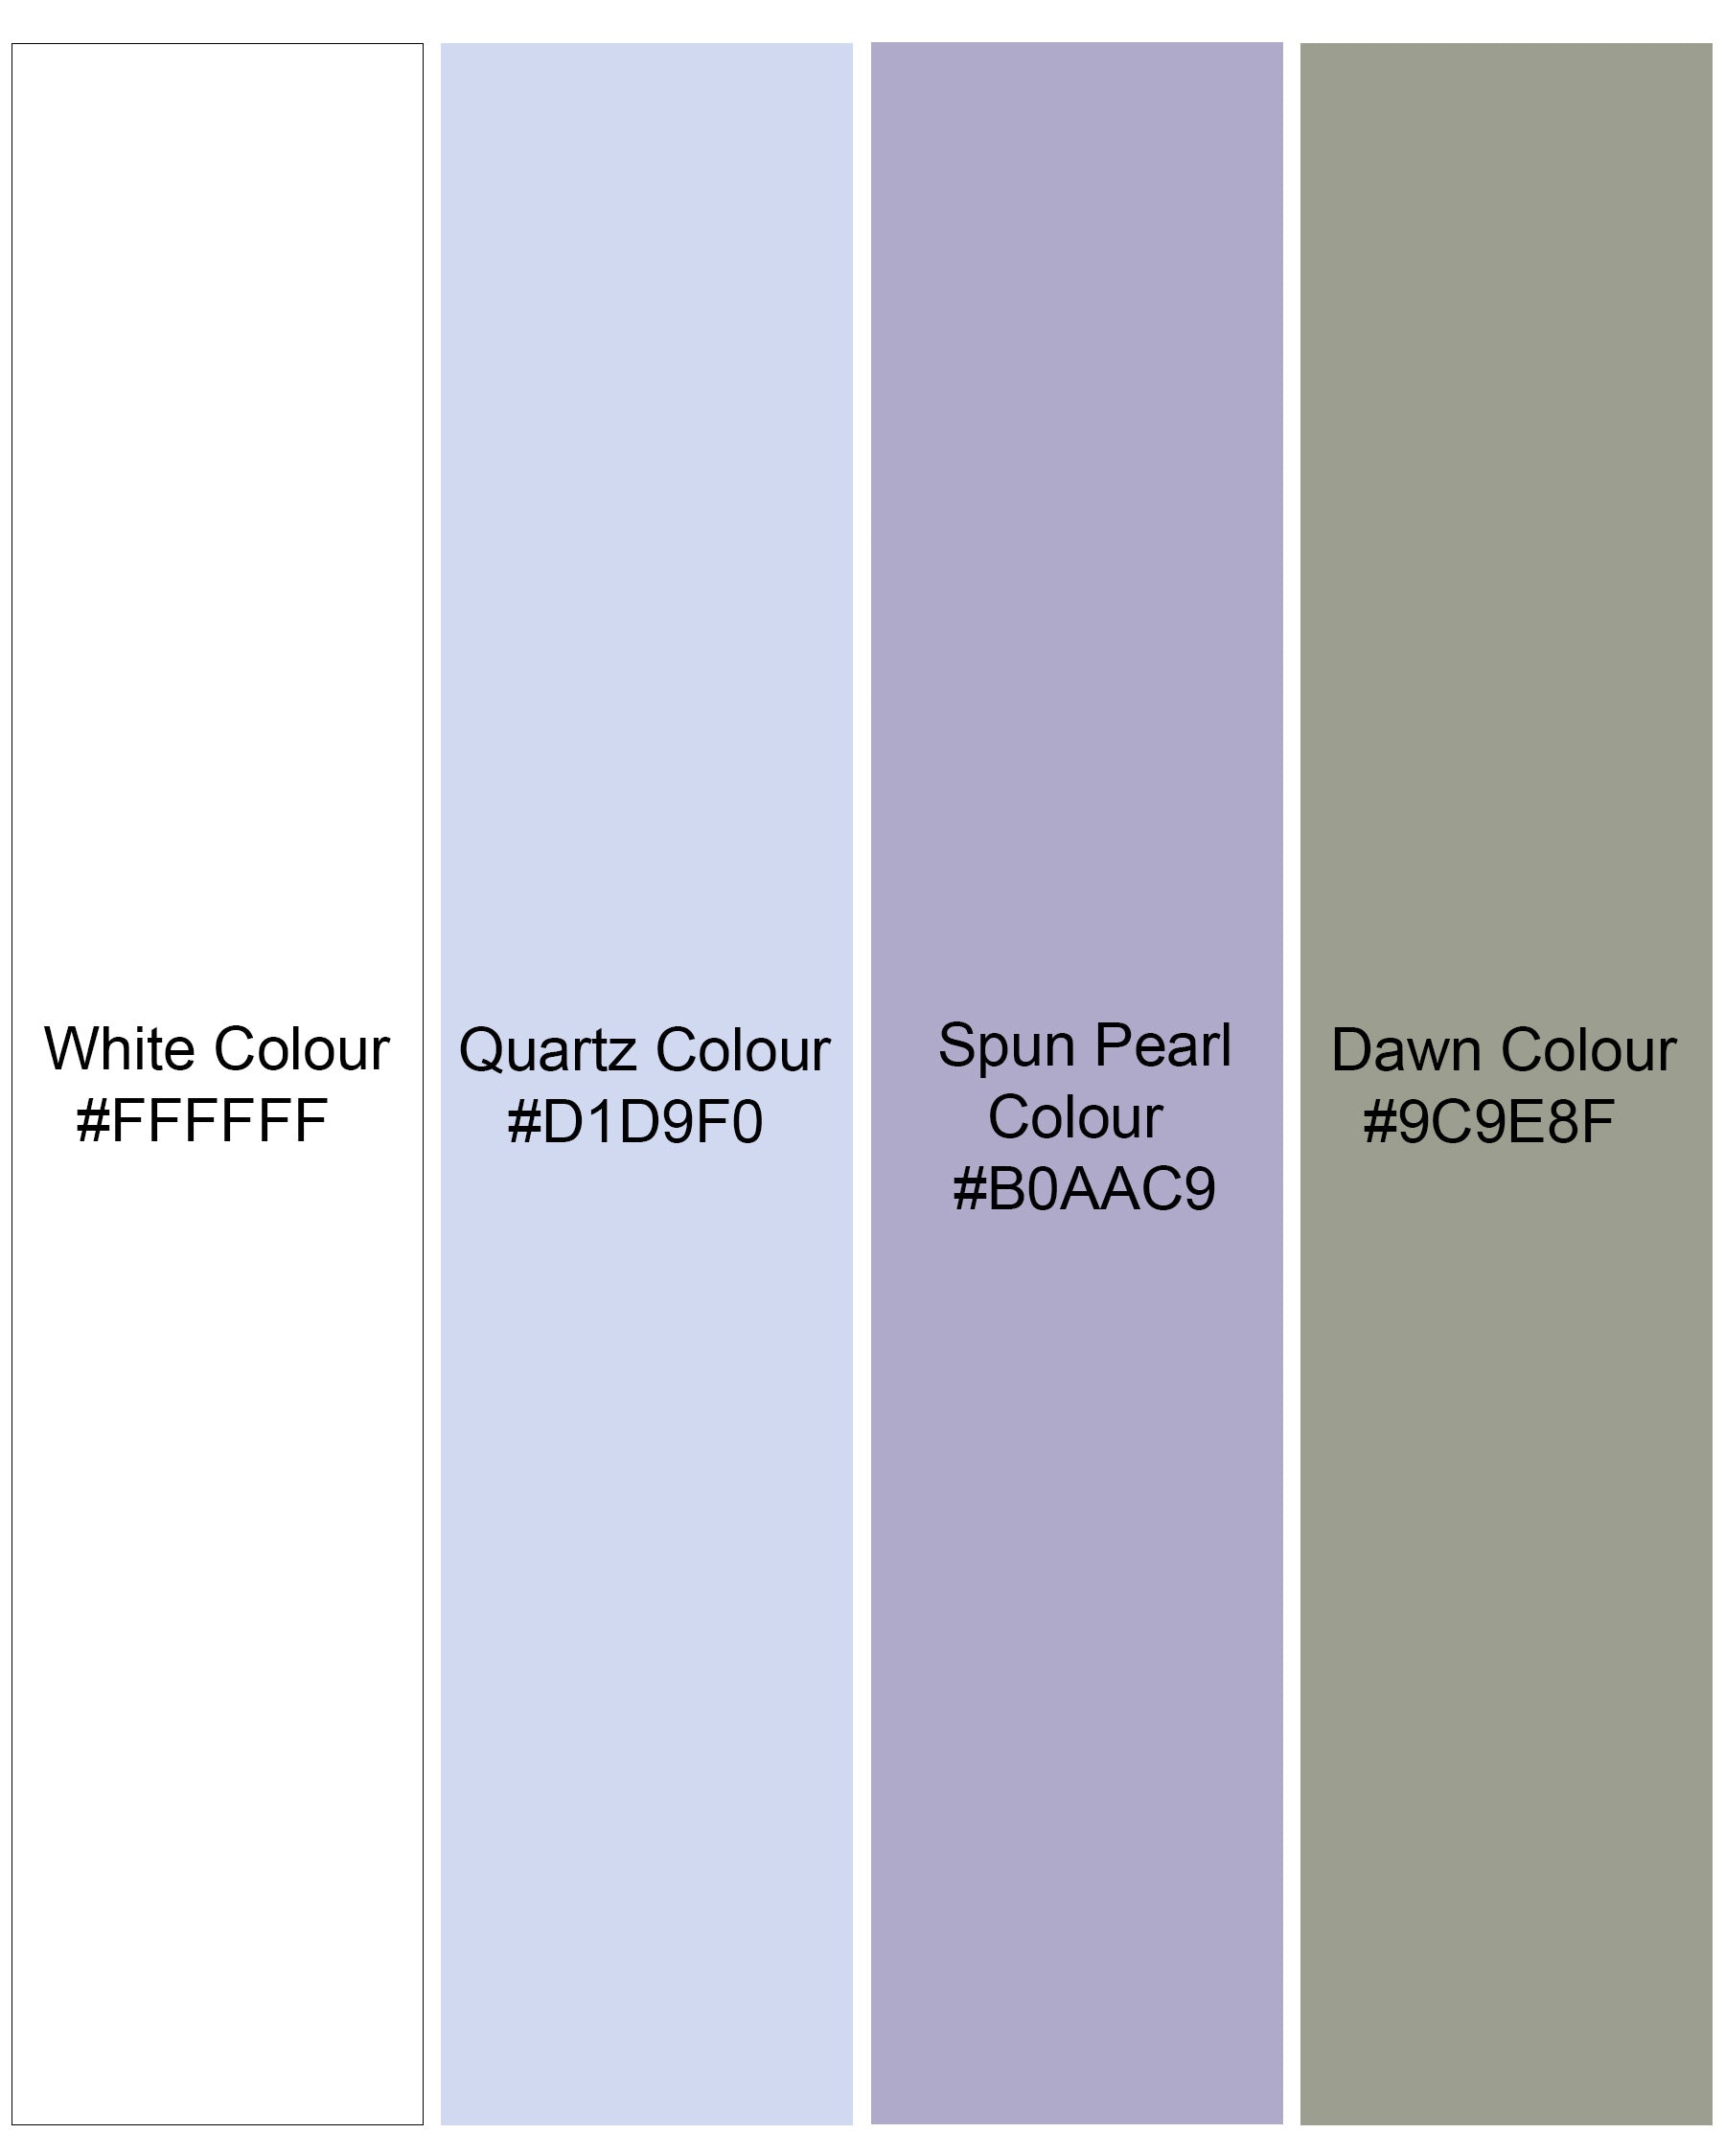 Bright White Multicolour Striped Premium Cotton Kurta Shirt 8286-KS -38,8286-KS -H-38,8286-KS -39,8286-KS -H-39,8286-KS -40,8286-KS -H-40,8286-KS -42,8286-KS -H-42,8286-KS -44,8286-KS -H-44,8286-KS -46,8286-KS -H-46,8286-KS -48,8286-KS -H-48,8286-KS -50,8286-KS -H-50,8286-KS -52,8286-KS -H-52